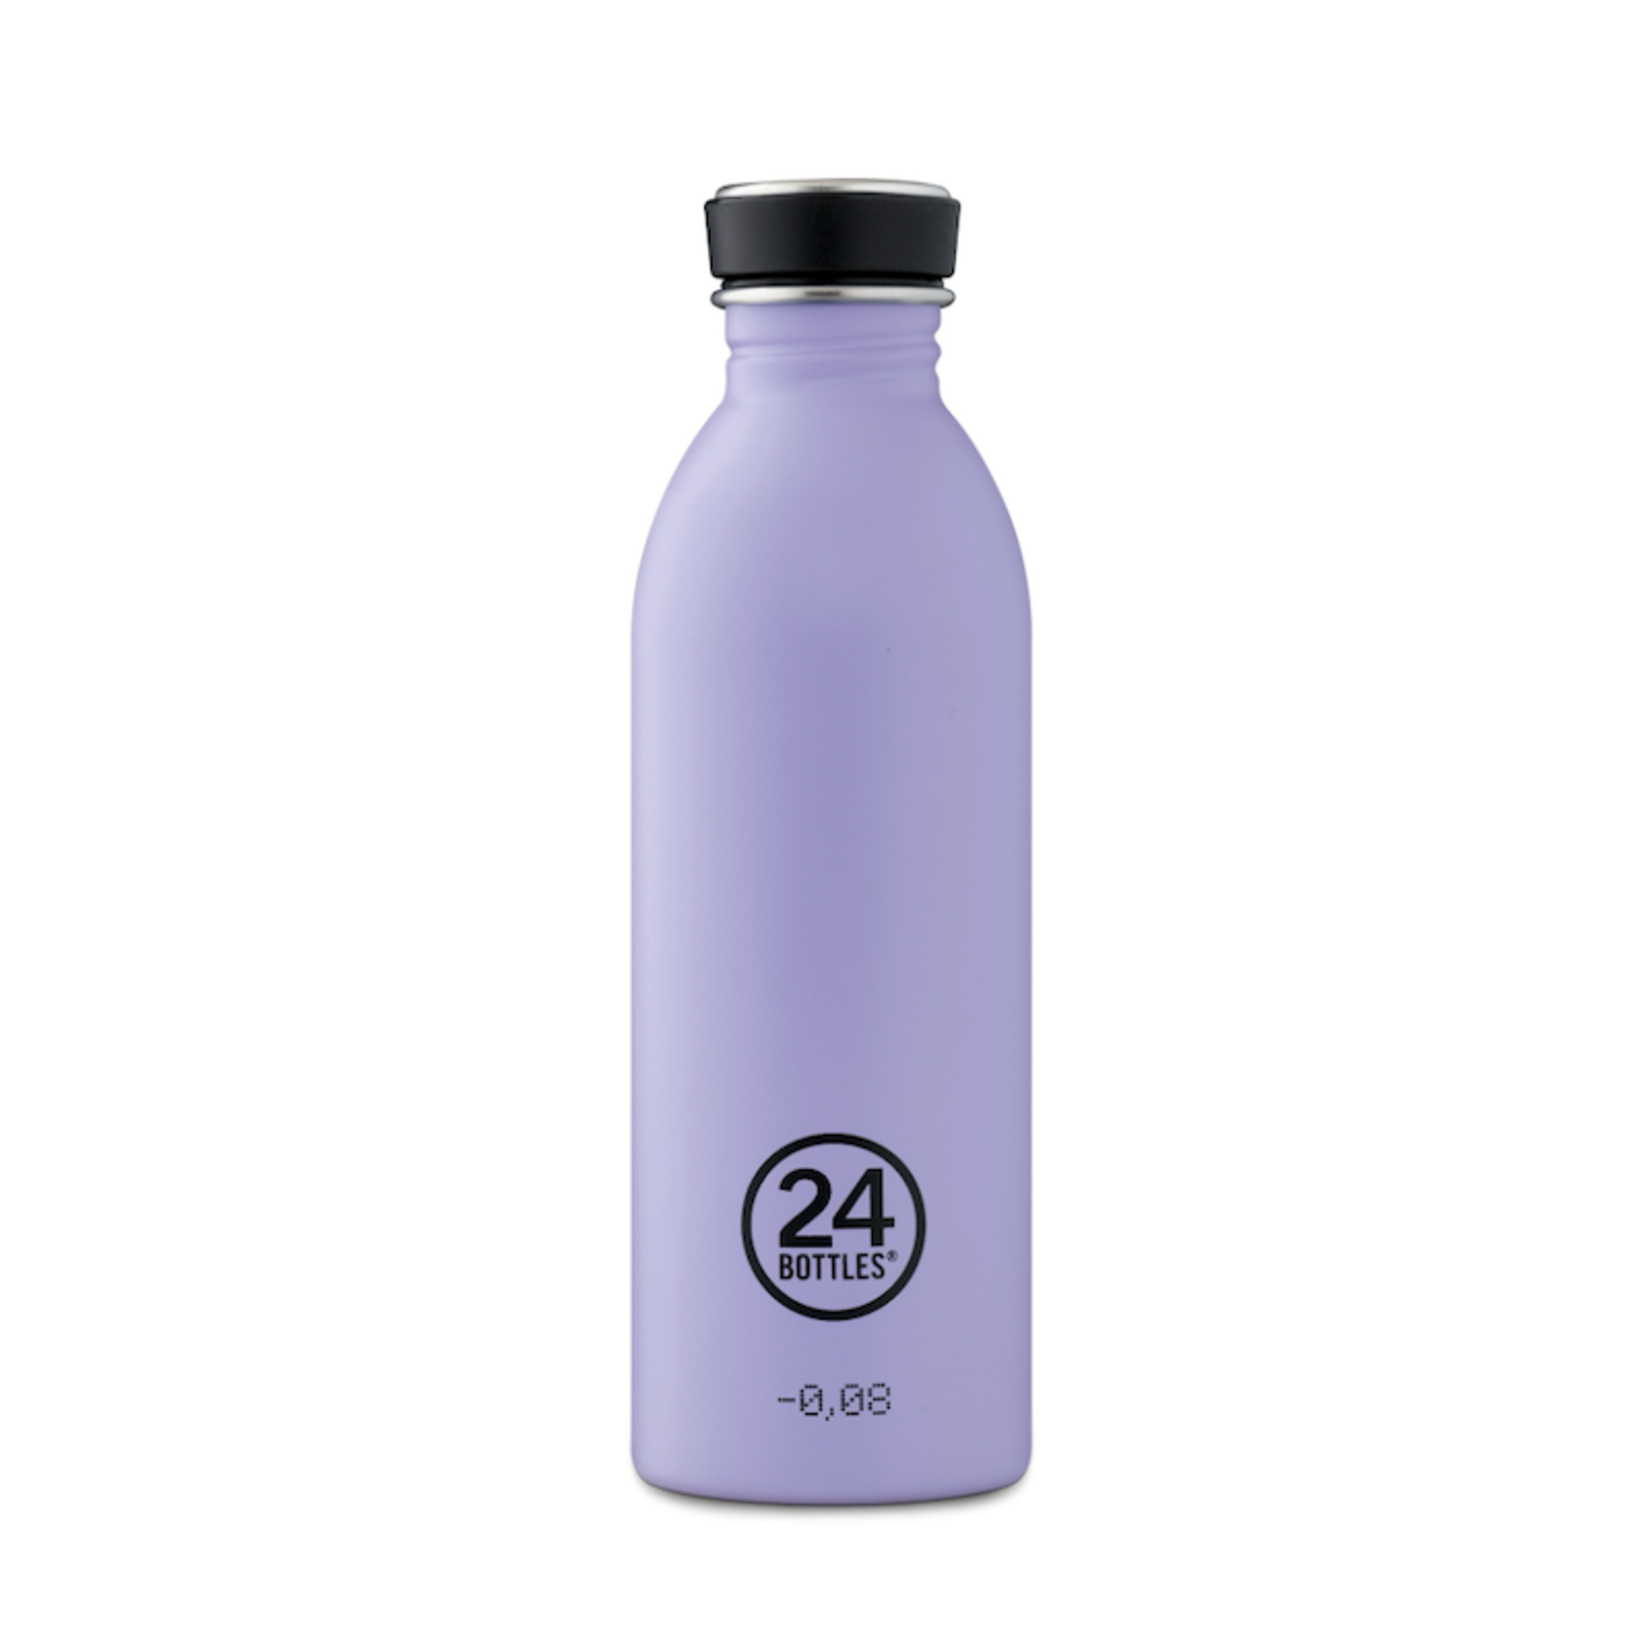 24 bottles 24 bottles - Urban bottle - erica/ purple